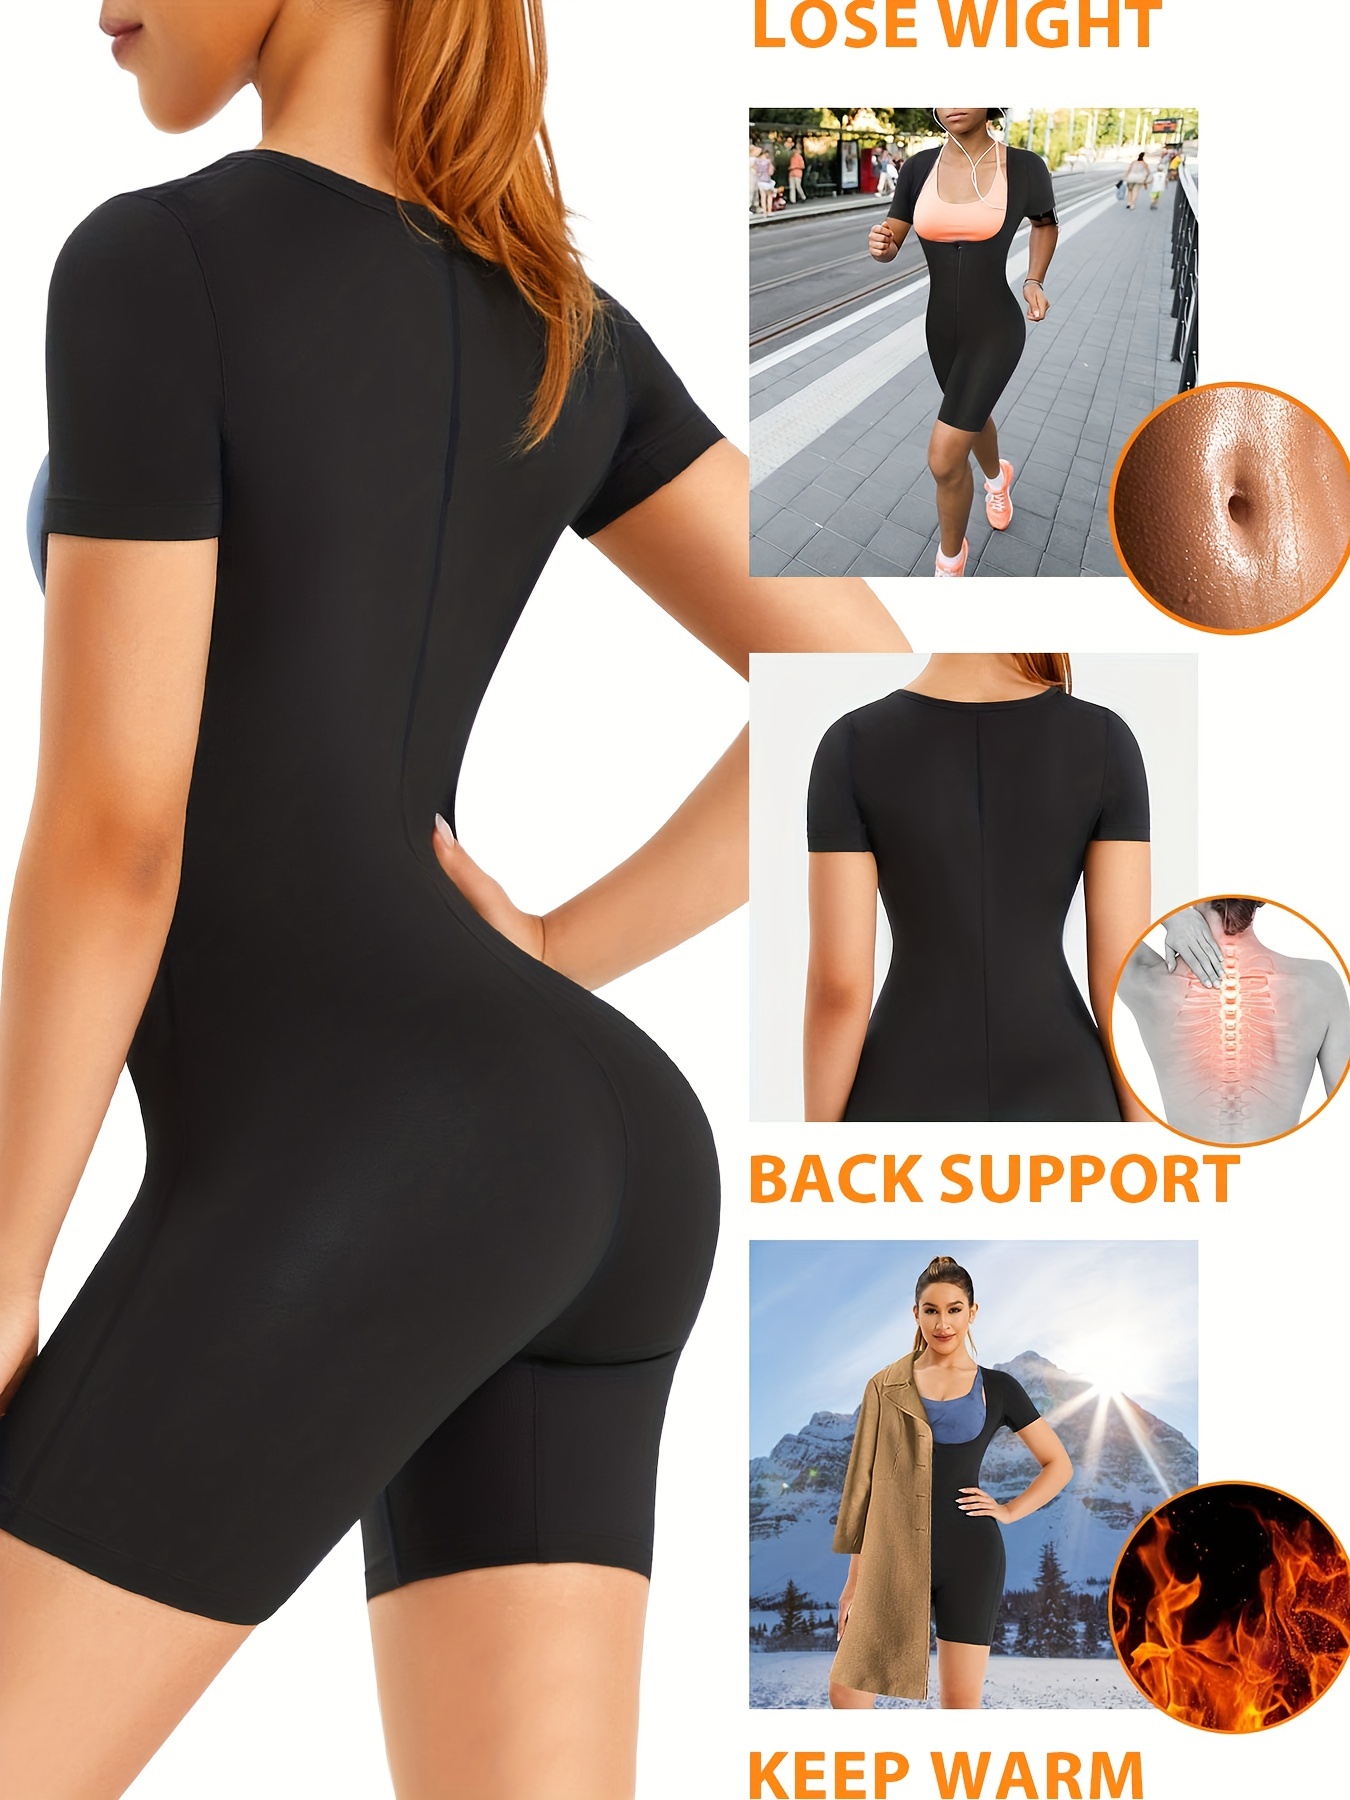 Women's Shapewear Tummy Control Butt Lifter Body Shaper Zipper